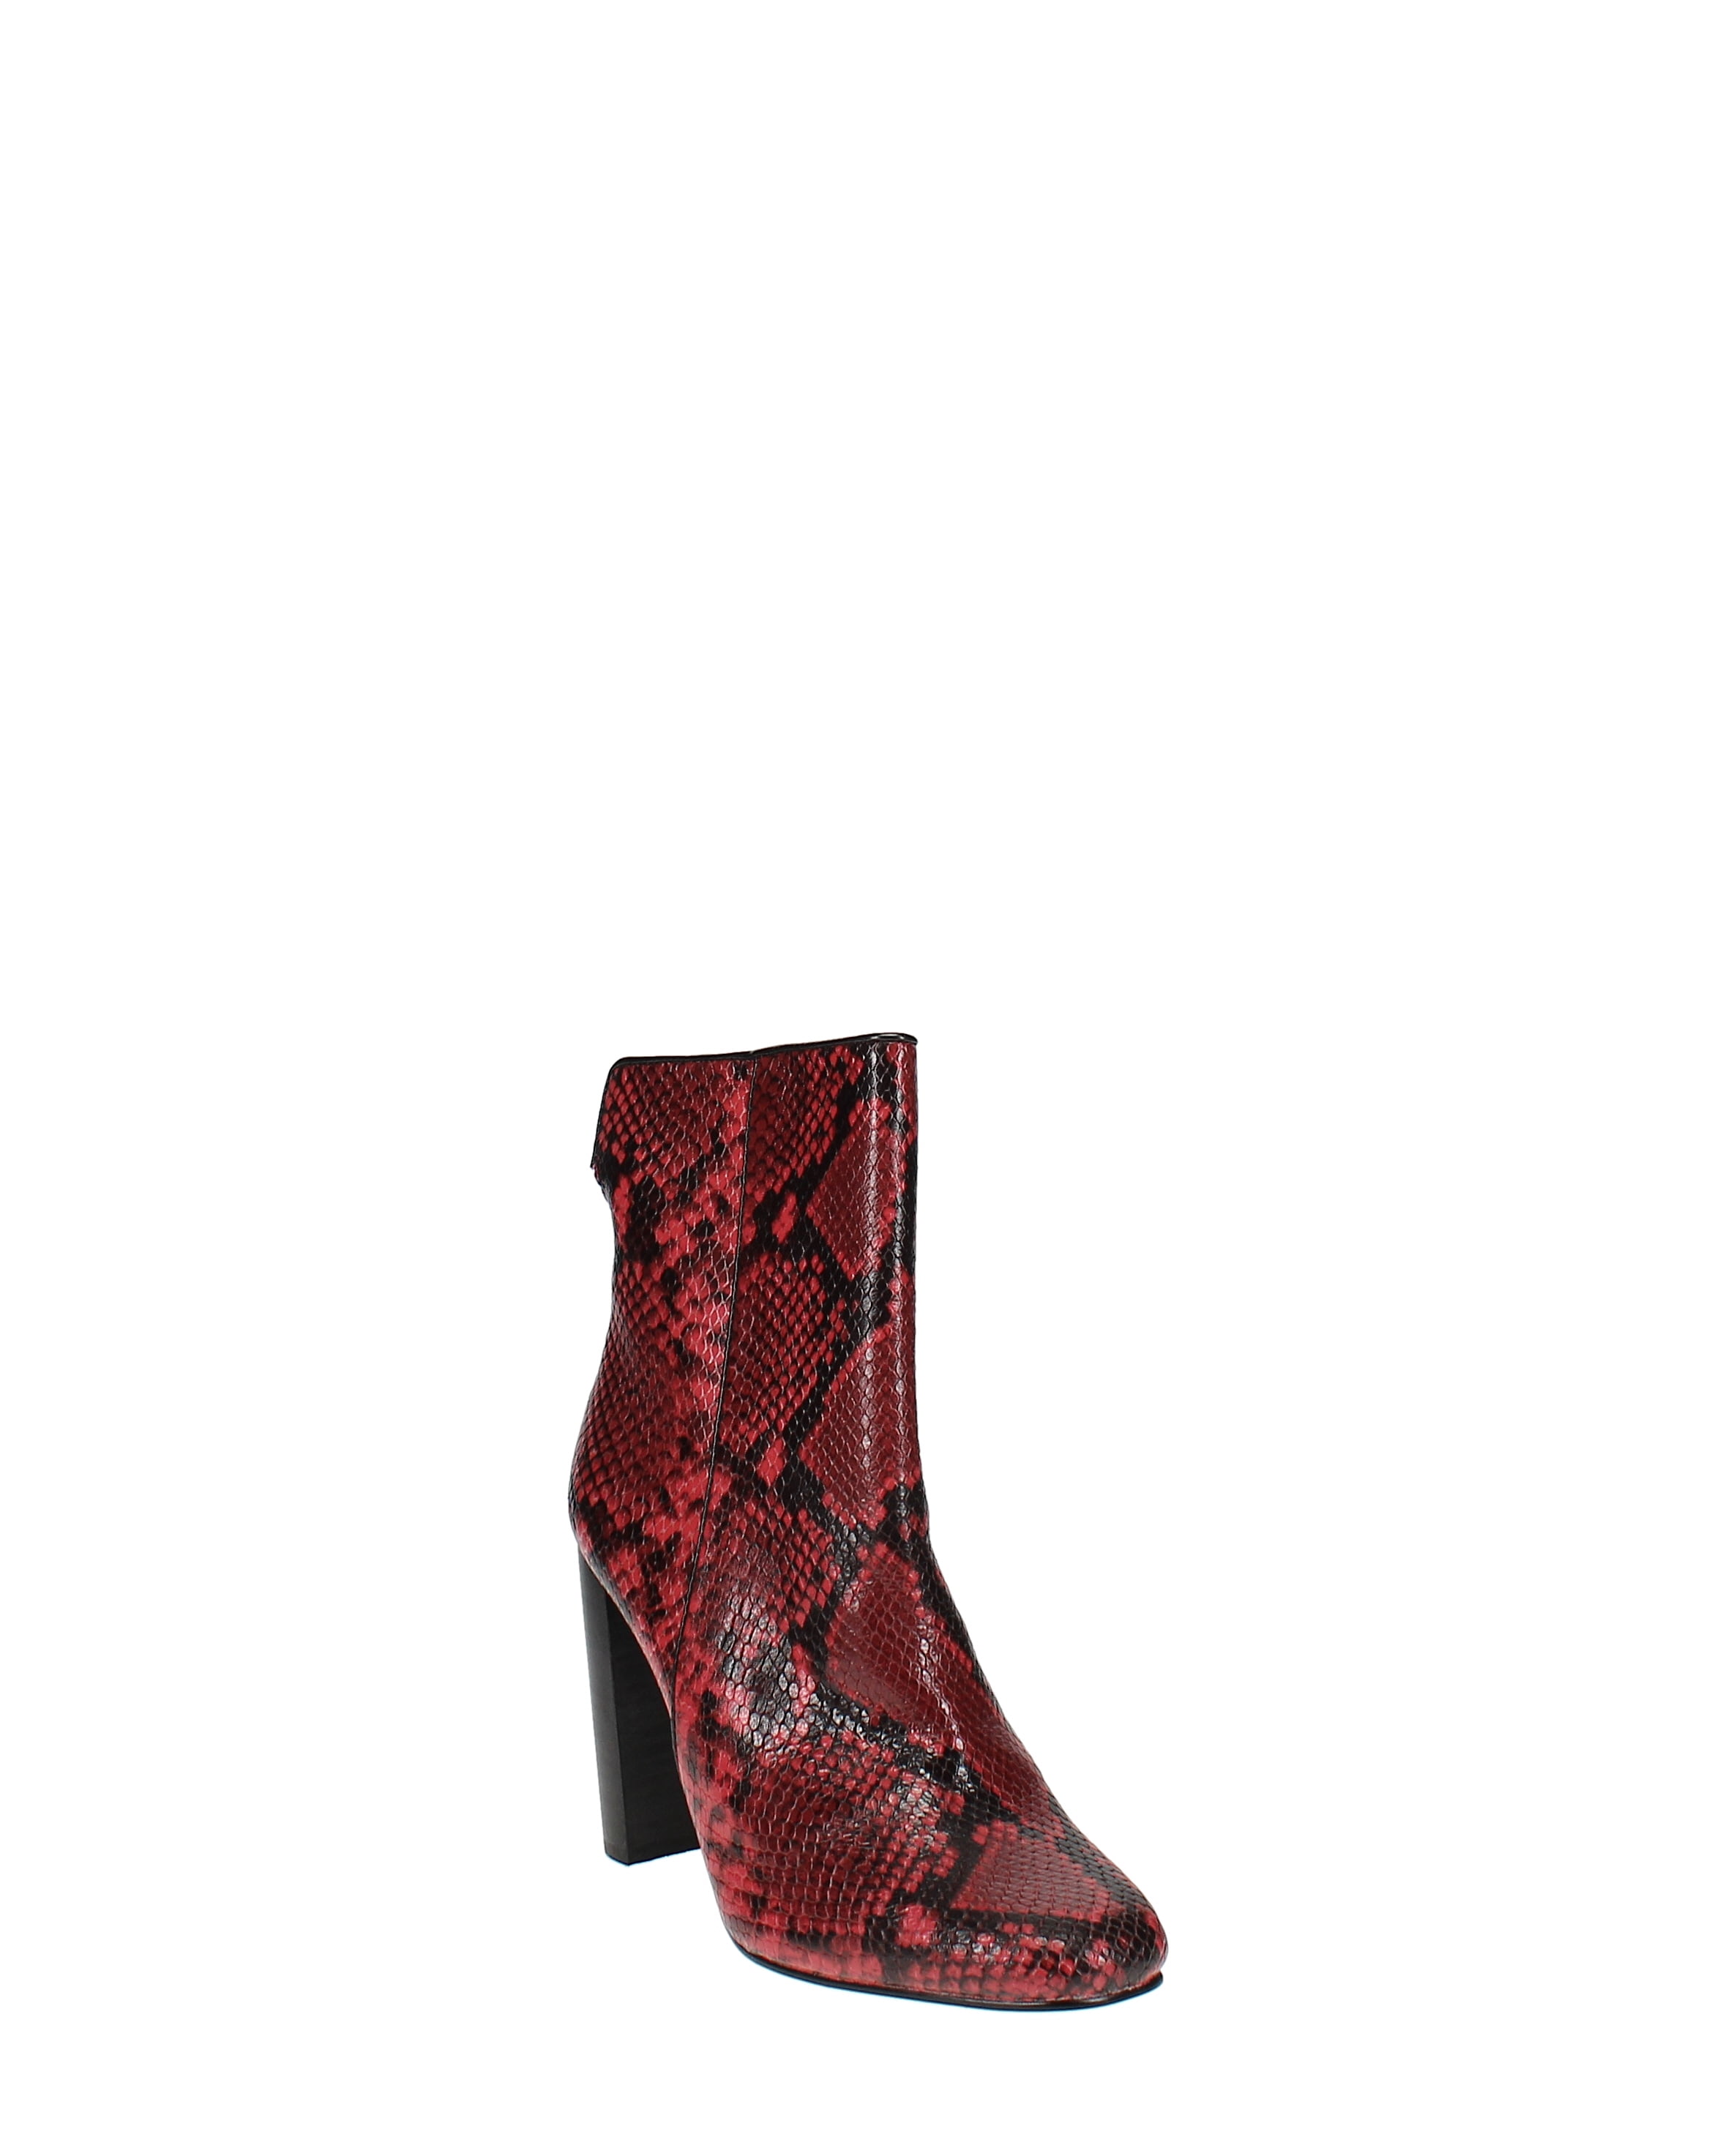 Aqua | Soren Block Heel Booties | Red | Size 6.5 - Walmart.com